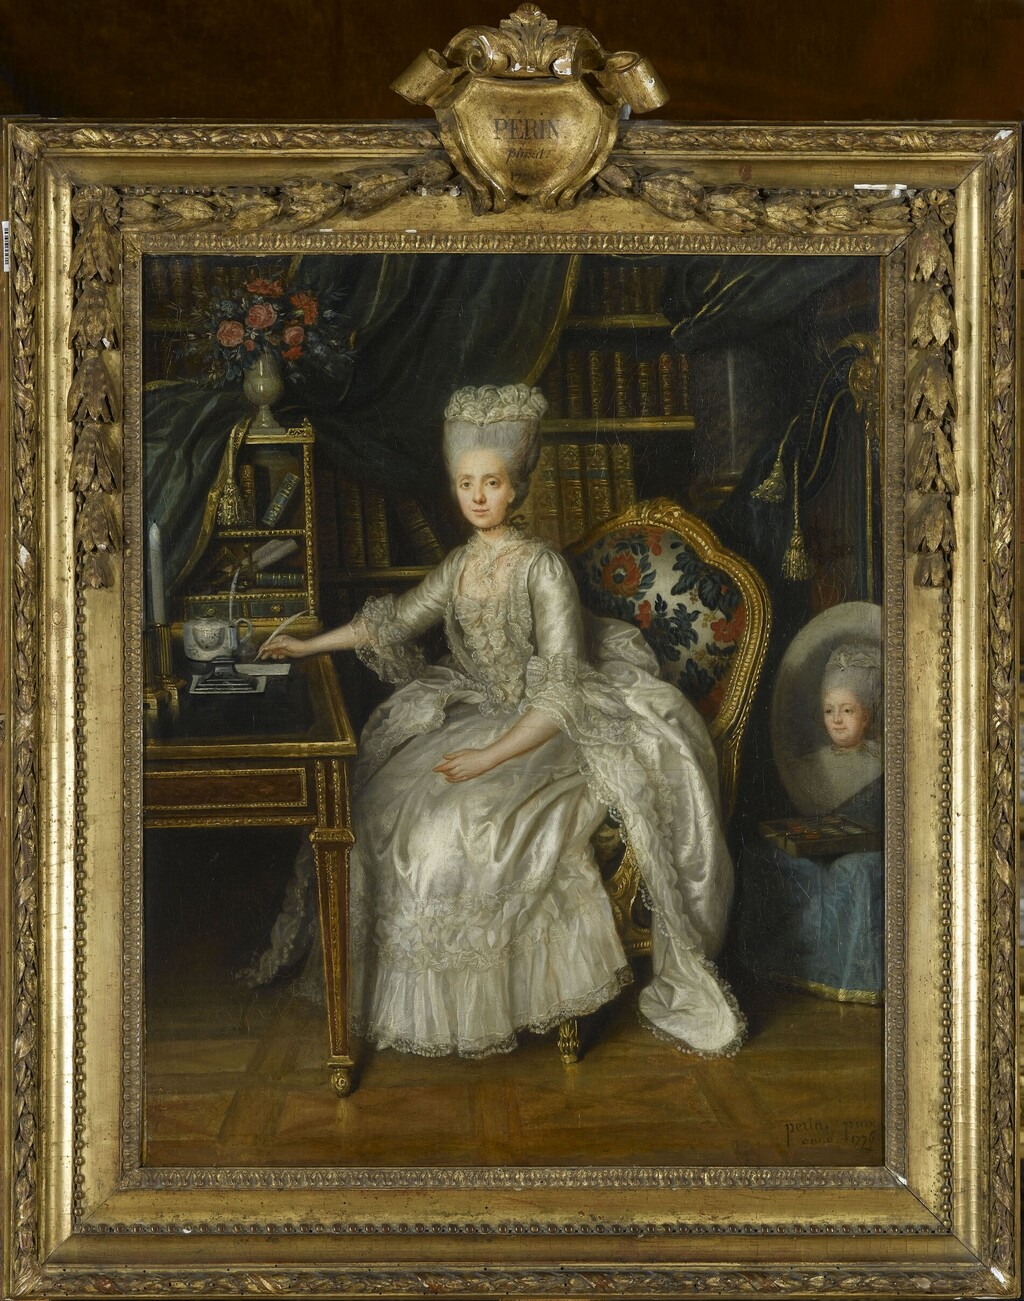 Madame Sophie -  Lié-Louis Périn-Salbreux : Portrait de Marie-Antoinette ou de Madame Sophie ? - Page 2 Image589